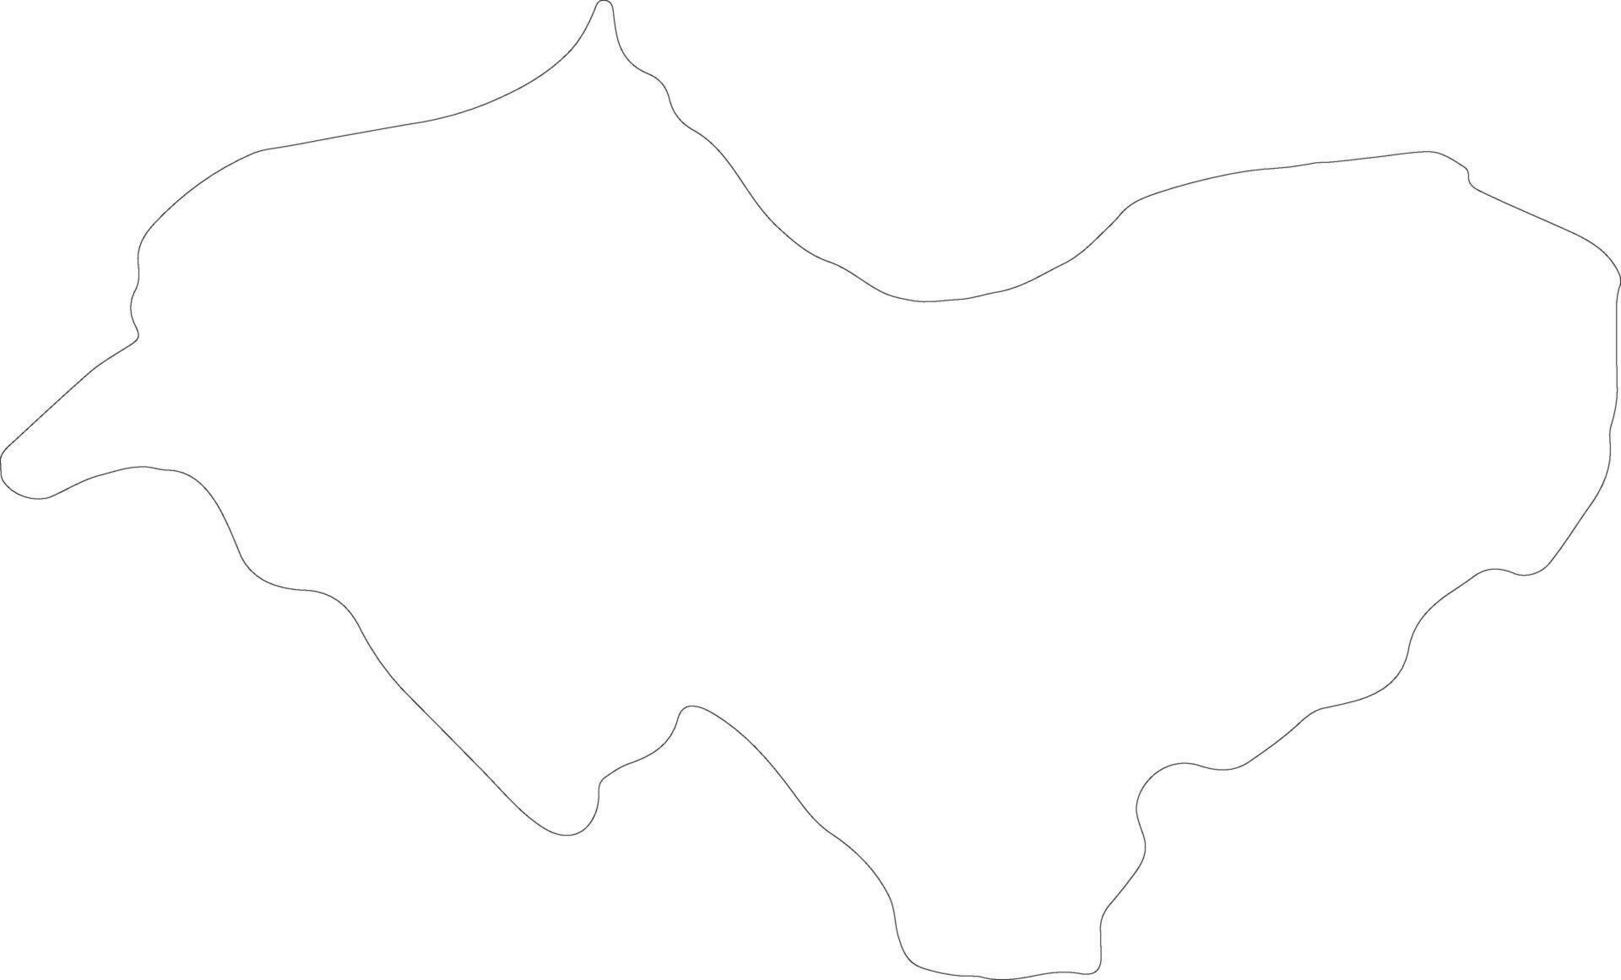 Canar Ecuador outline map vector